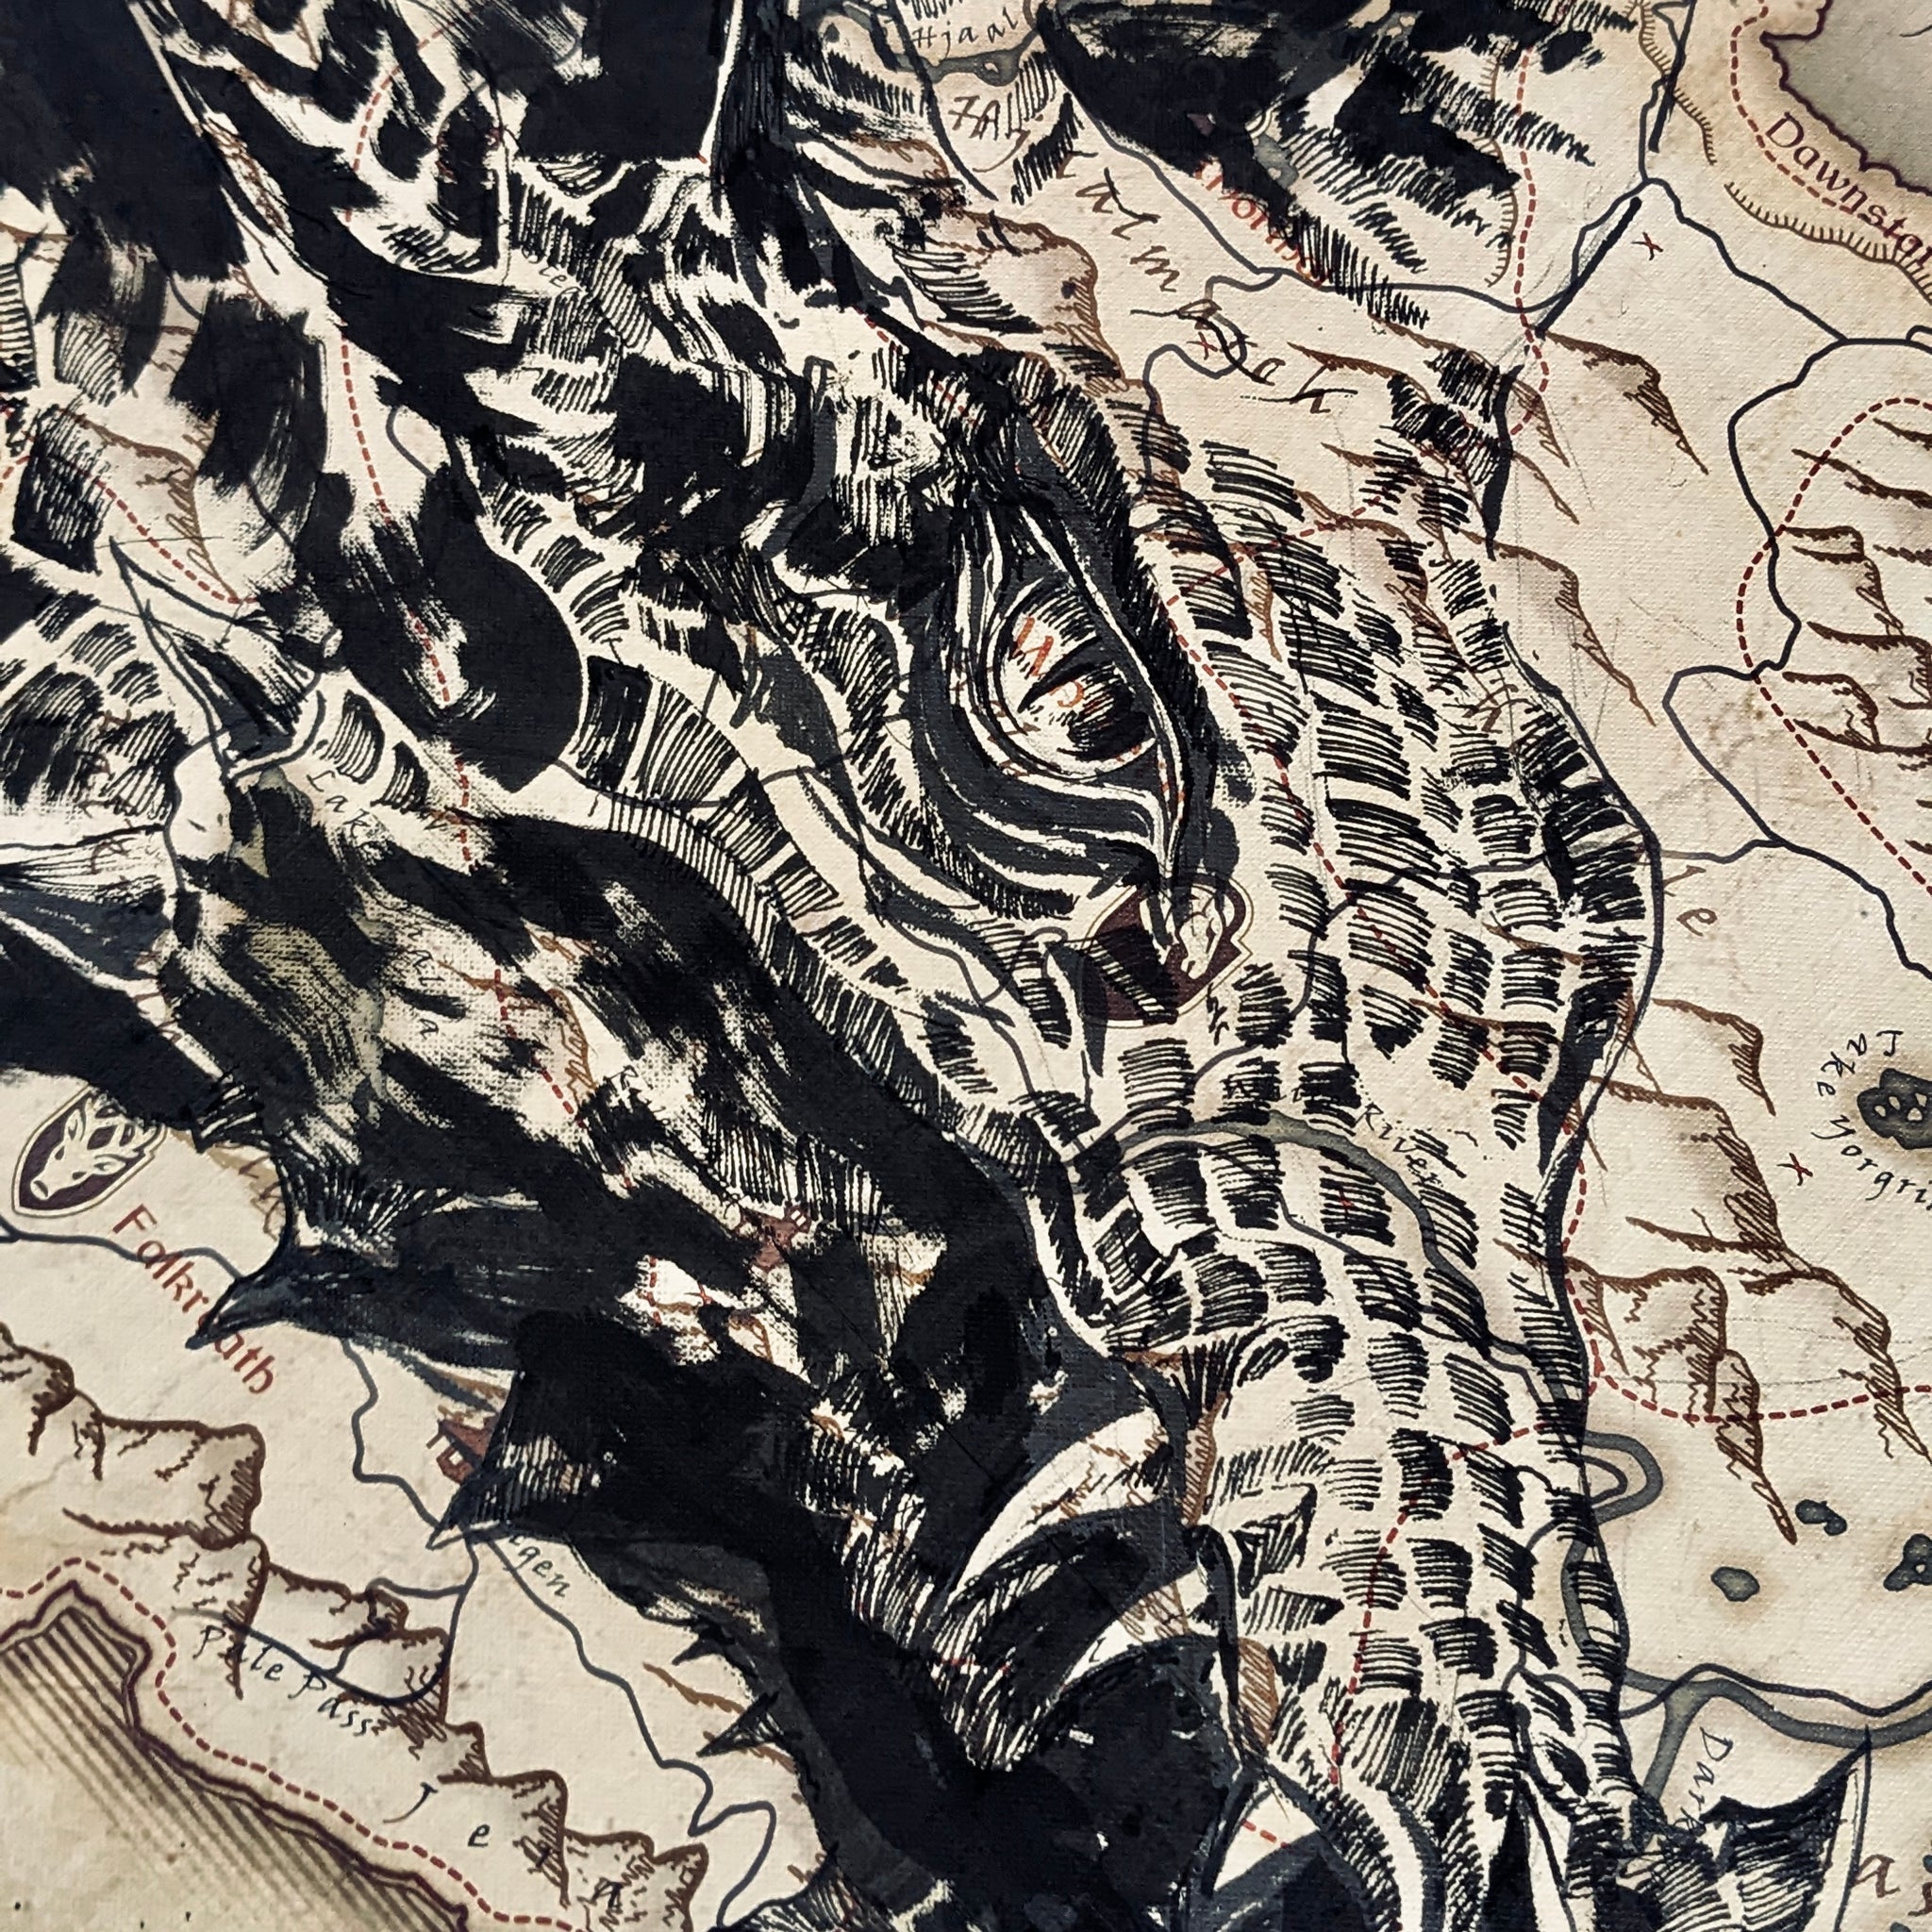 Original Piece - Skyrim Map